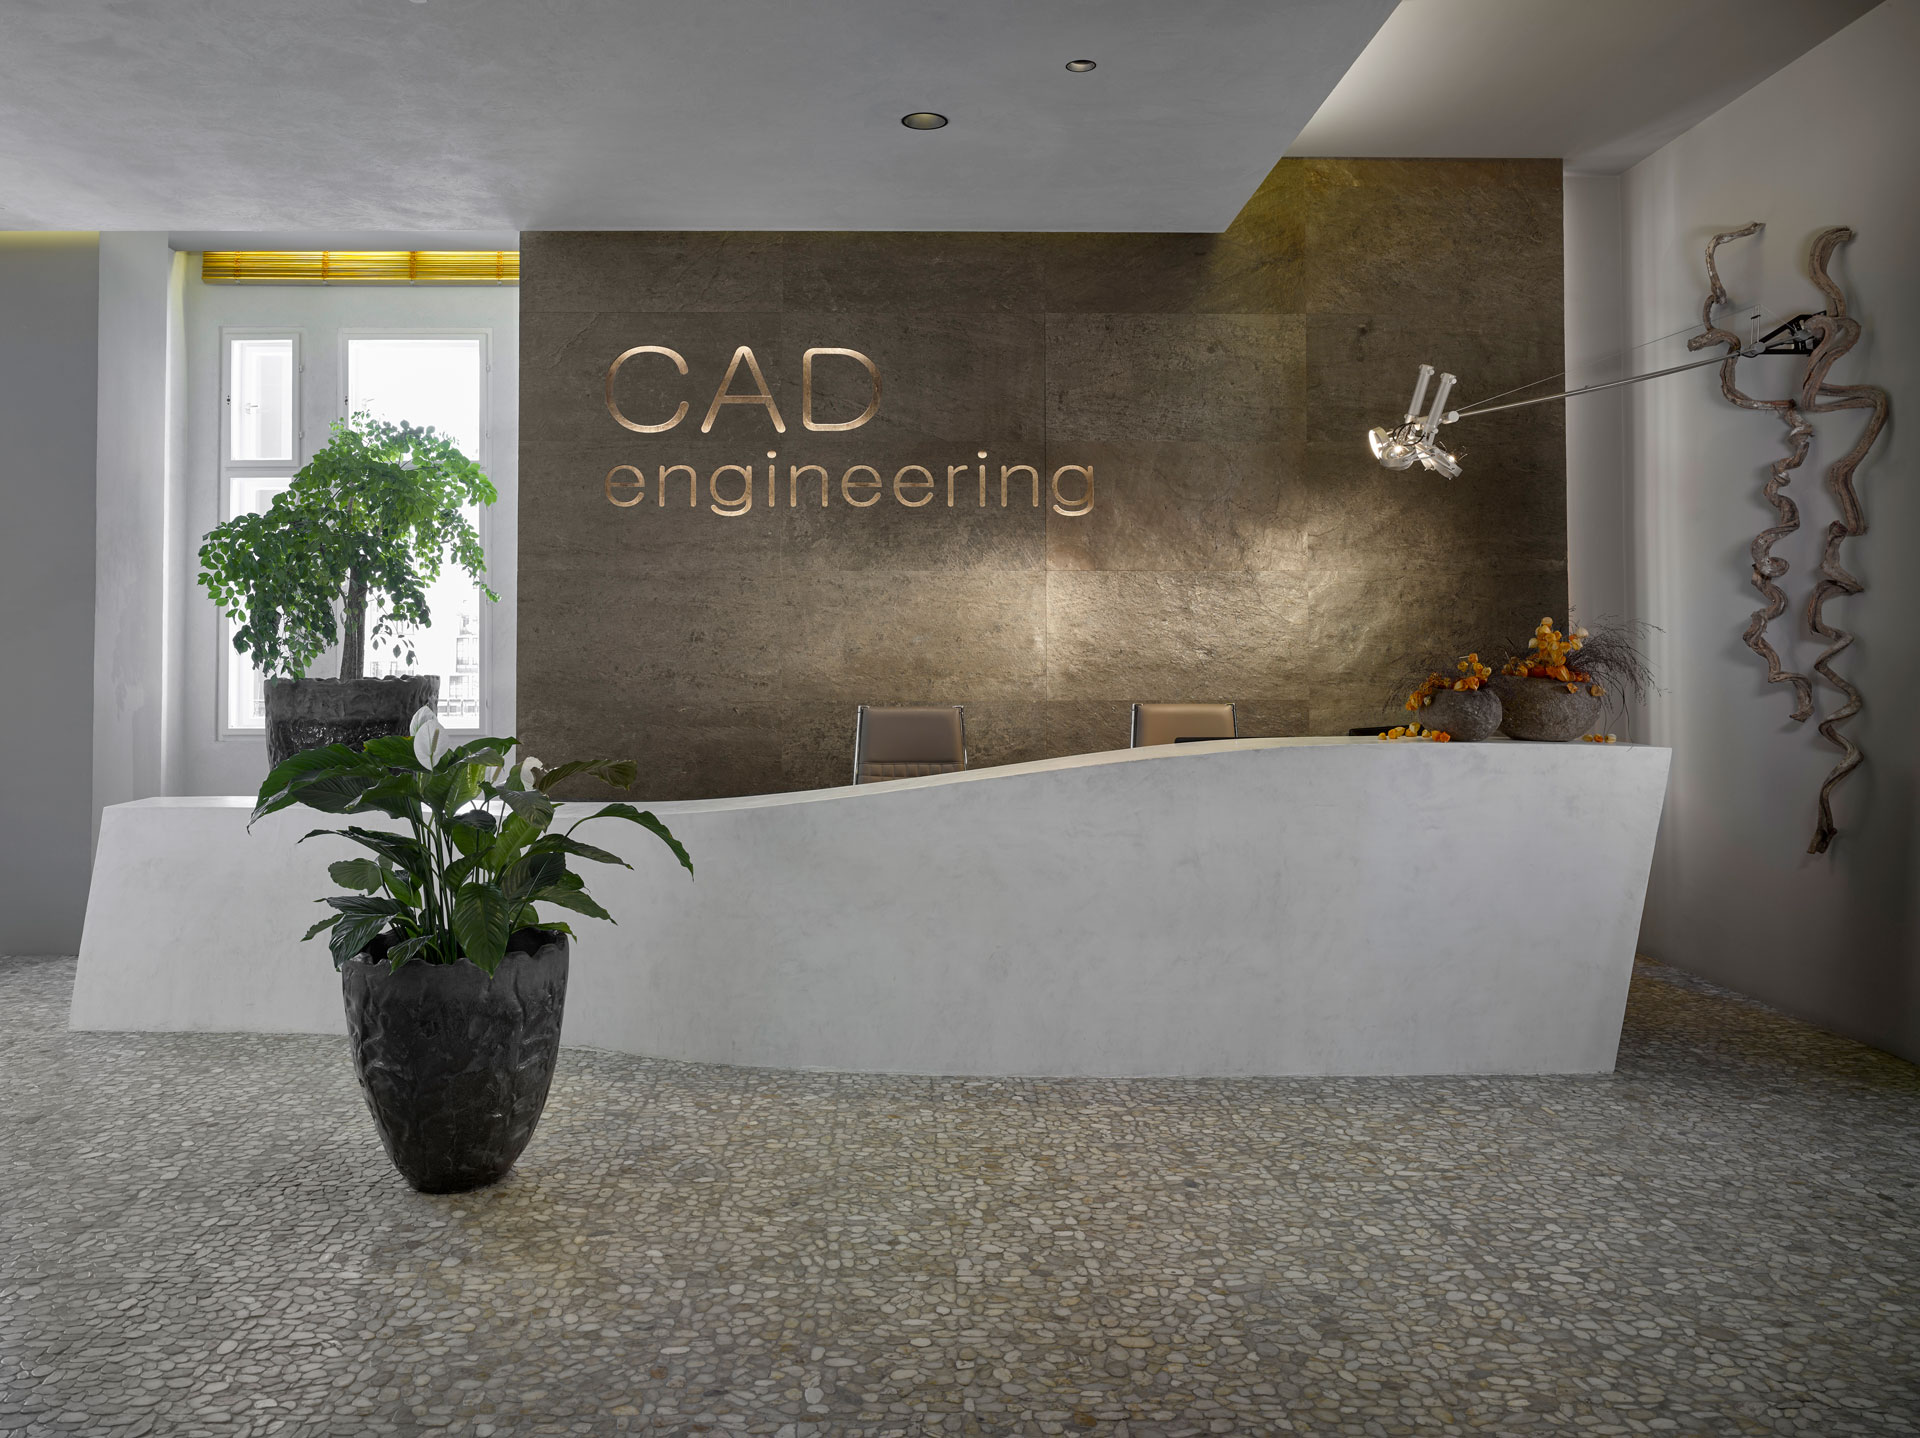 EFF - CAD engineering - vybavení kancelářských prostor